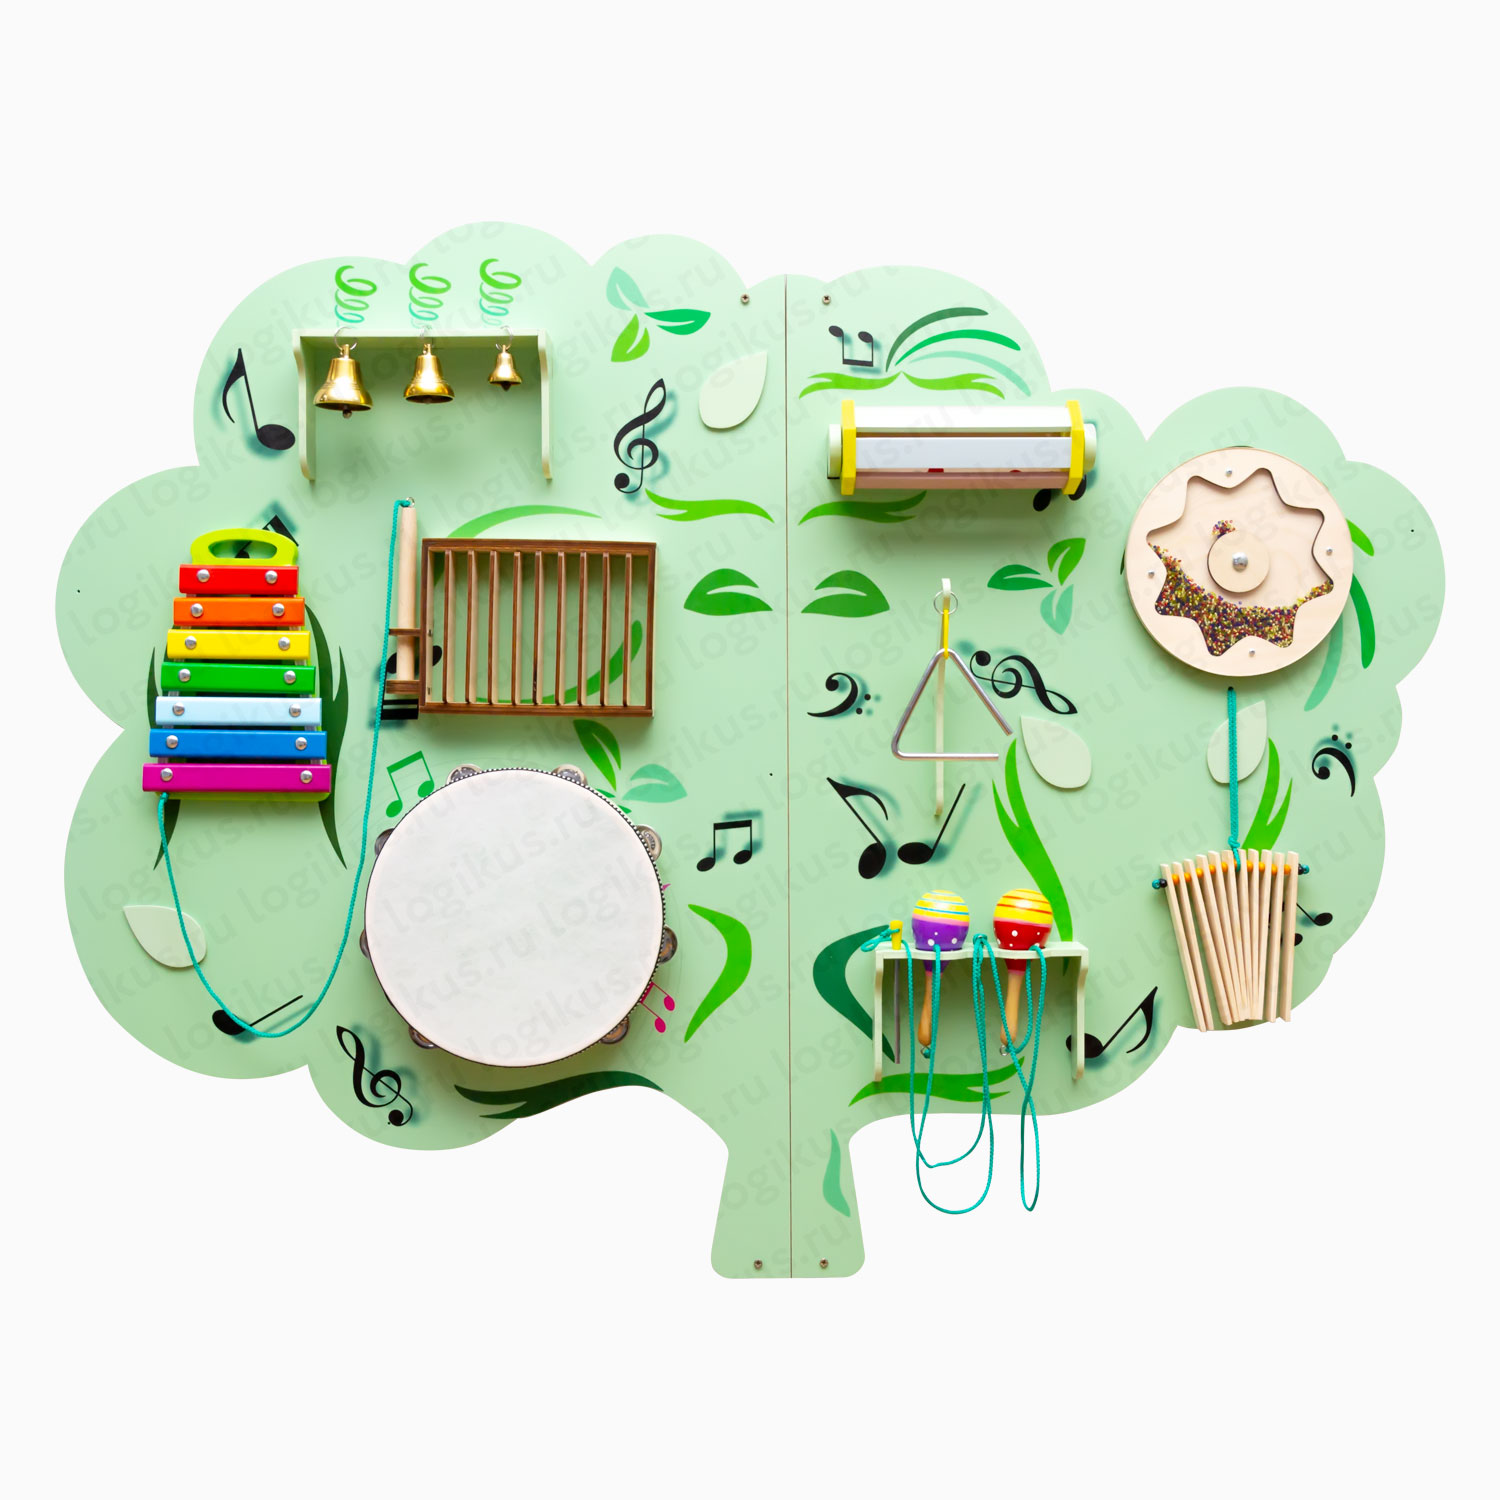 Развивающая панель "Музыкальное дерево" декоративная панель для оформления стен в детском саду, в дошкольном учреждении